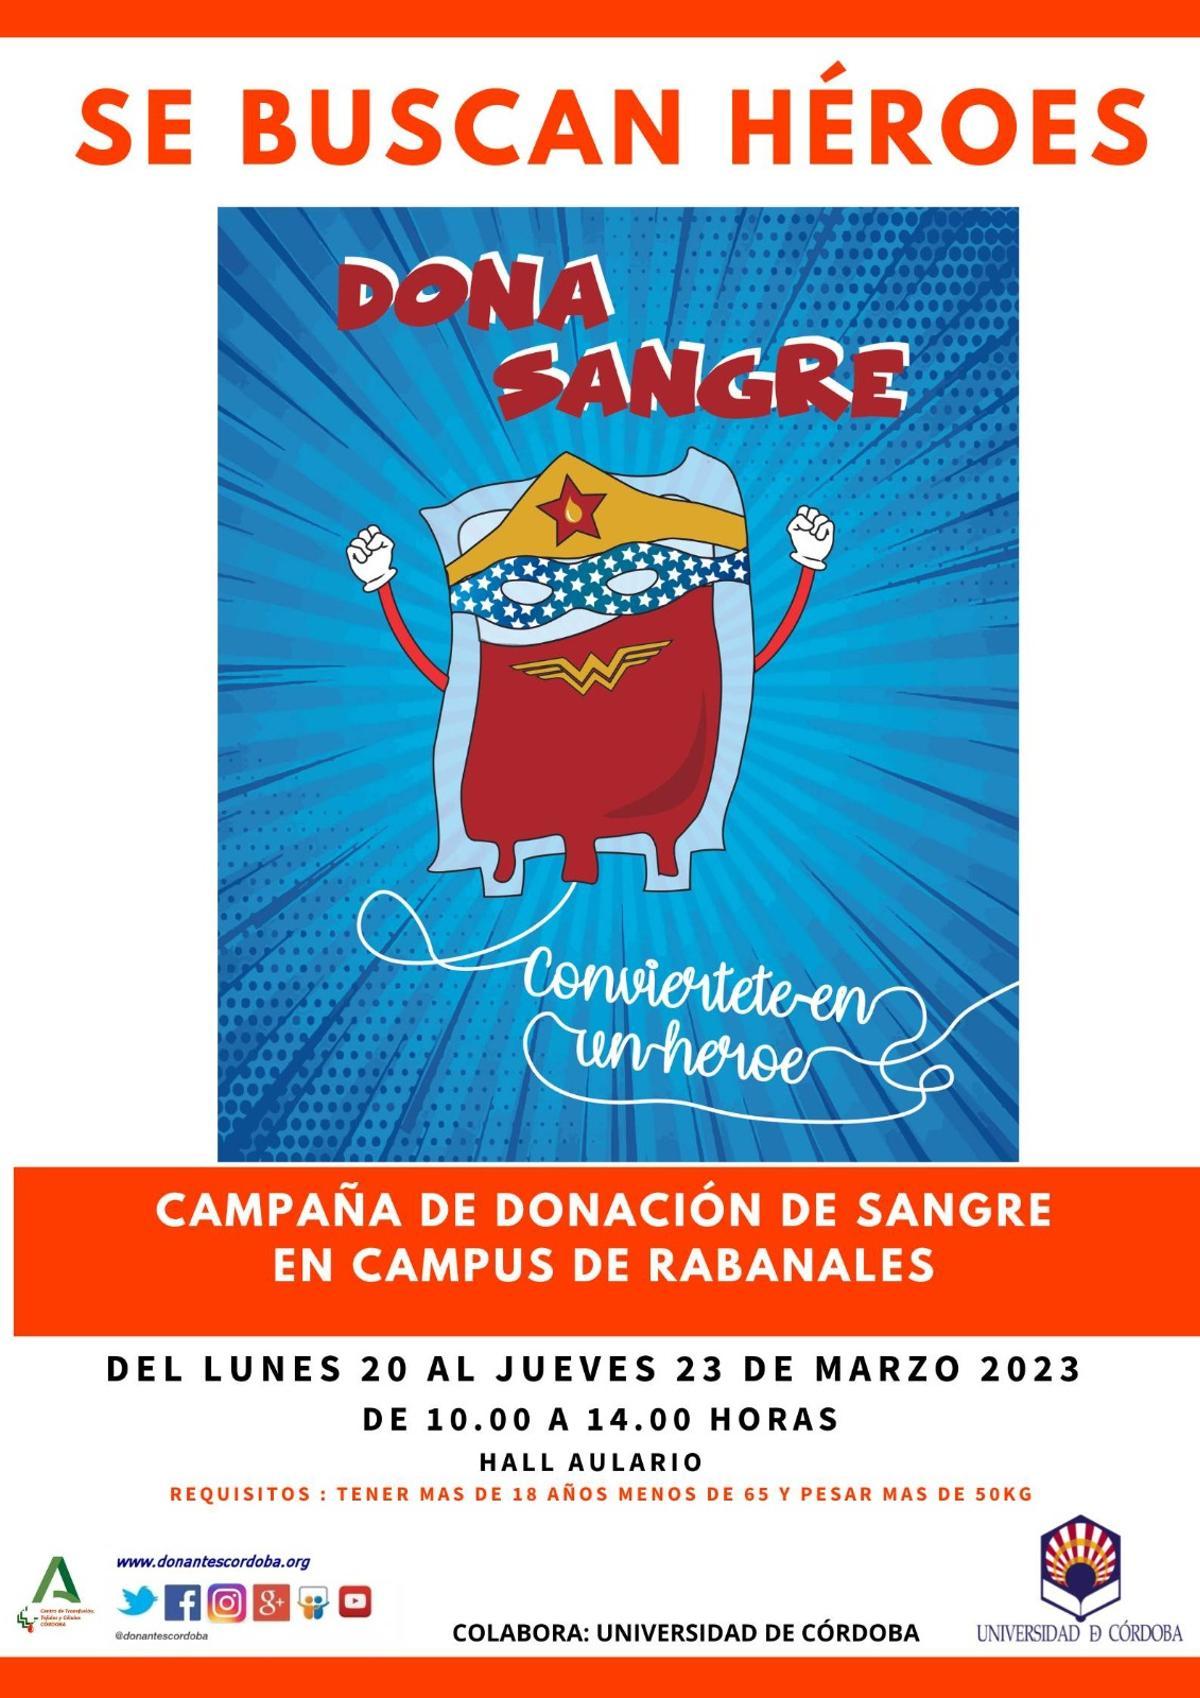 Imagen de la campaña de promoción de la donación de sangre en el campus de Rabanales.